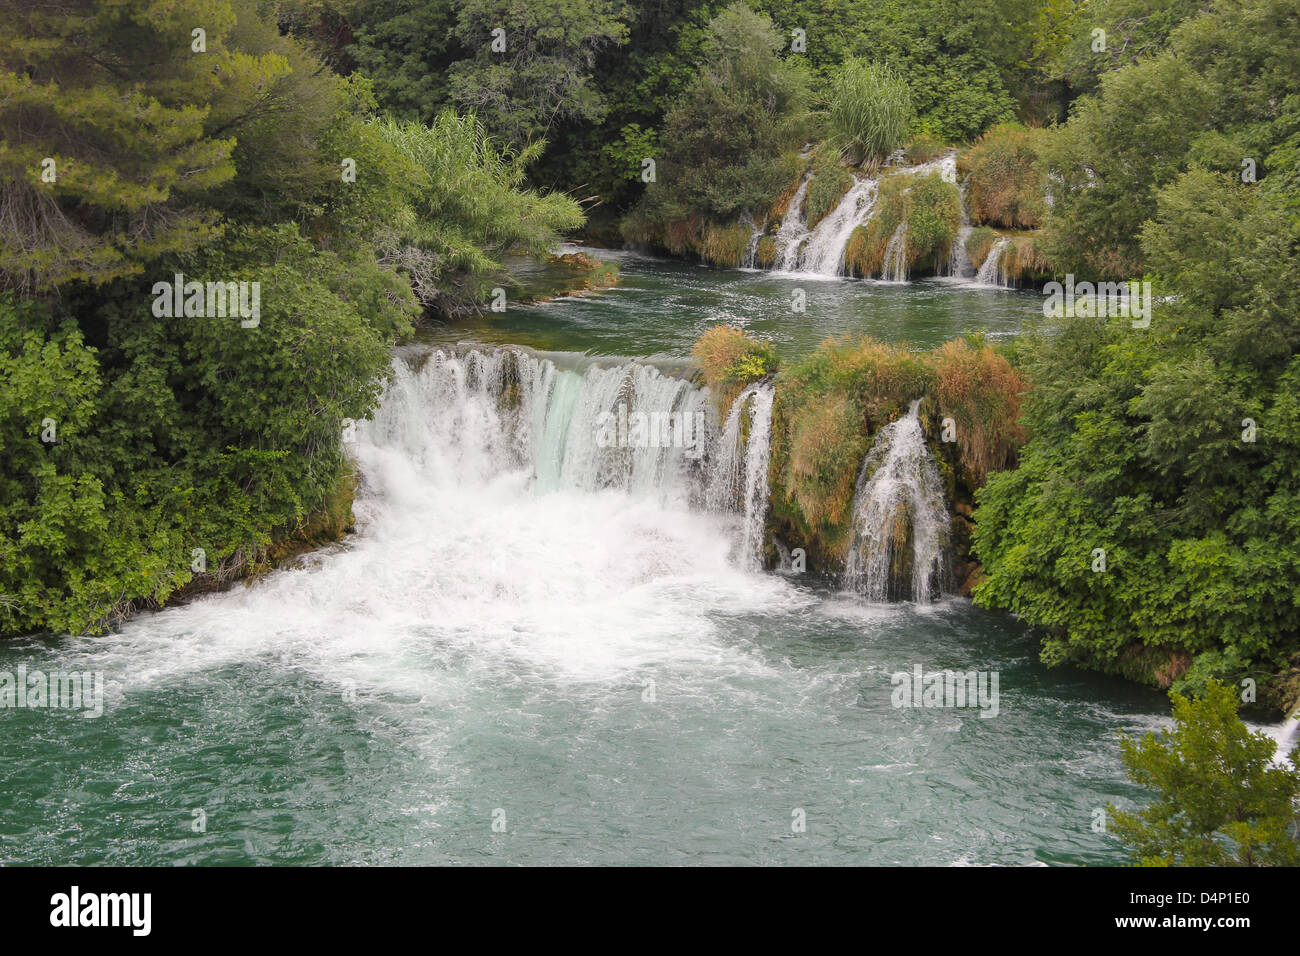 Cascades de la rivière Krka - Site du patrimoine mondial naturel de l'UNESCO, la Croatie Banque D'Images